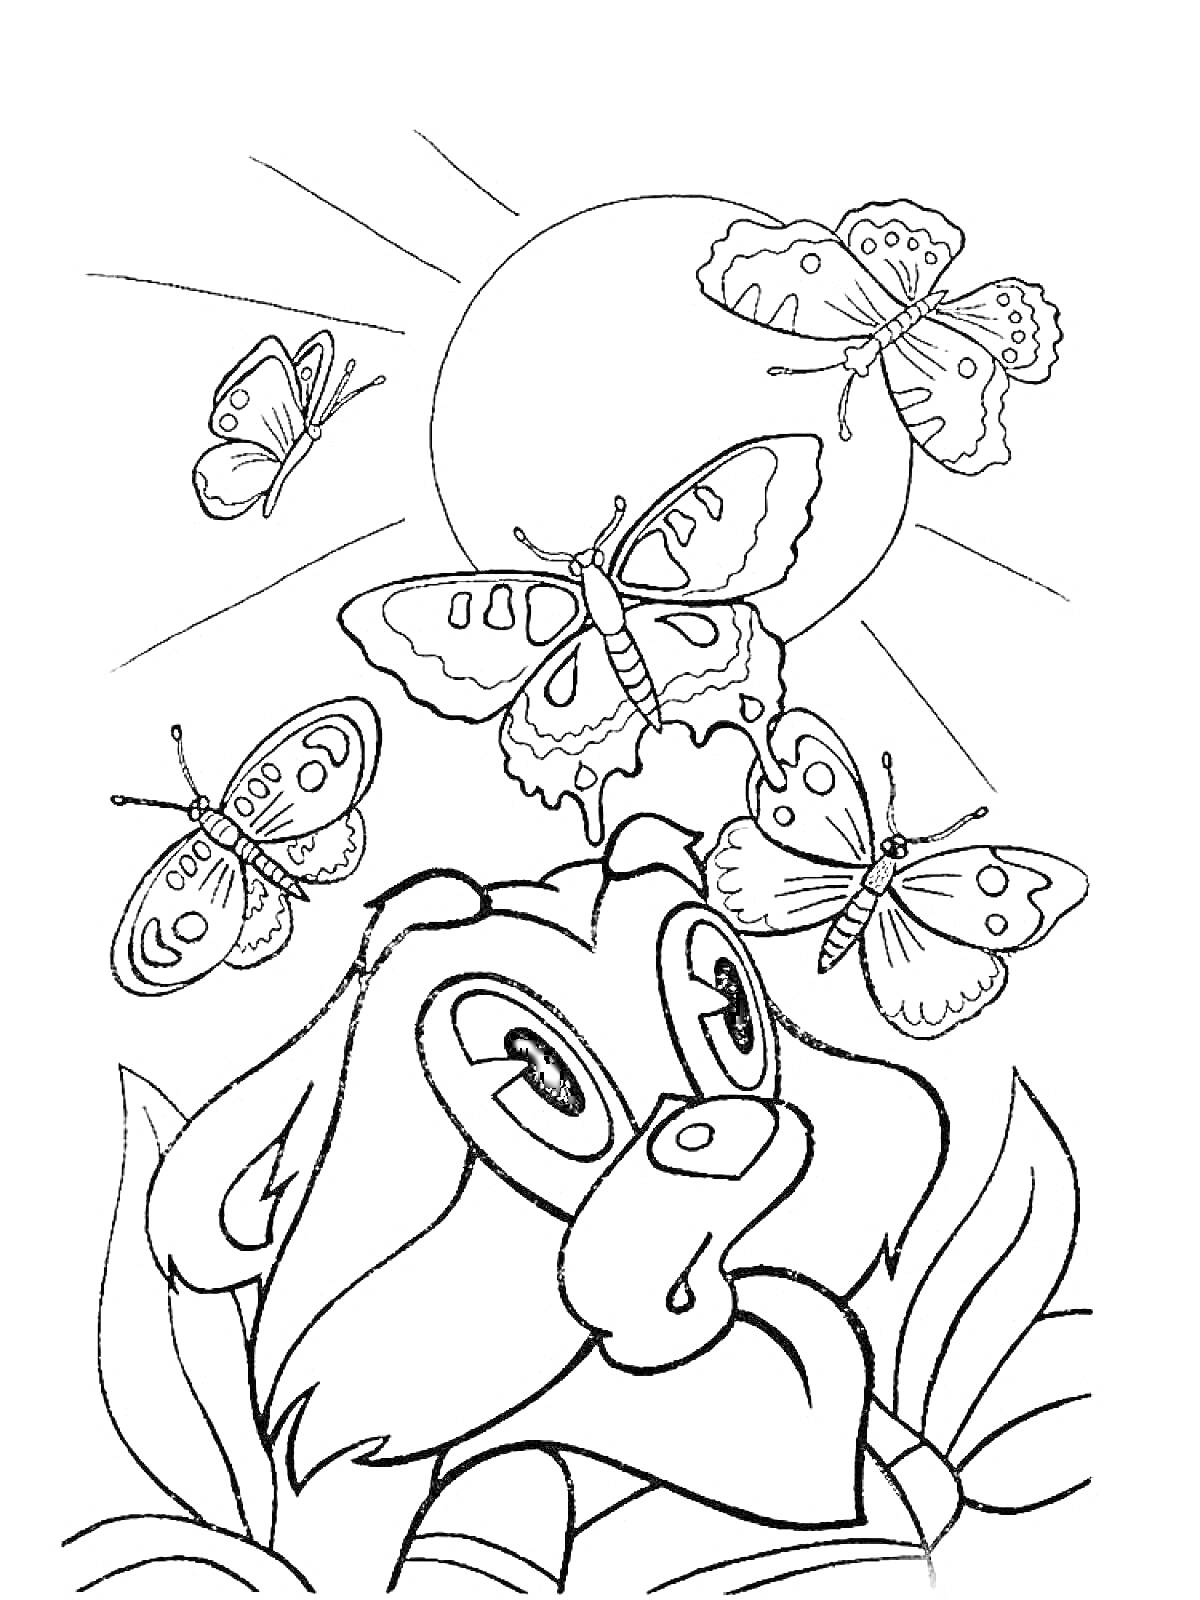 Раскраска Крошка енот с бабочками под солнцем